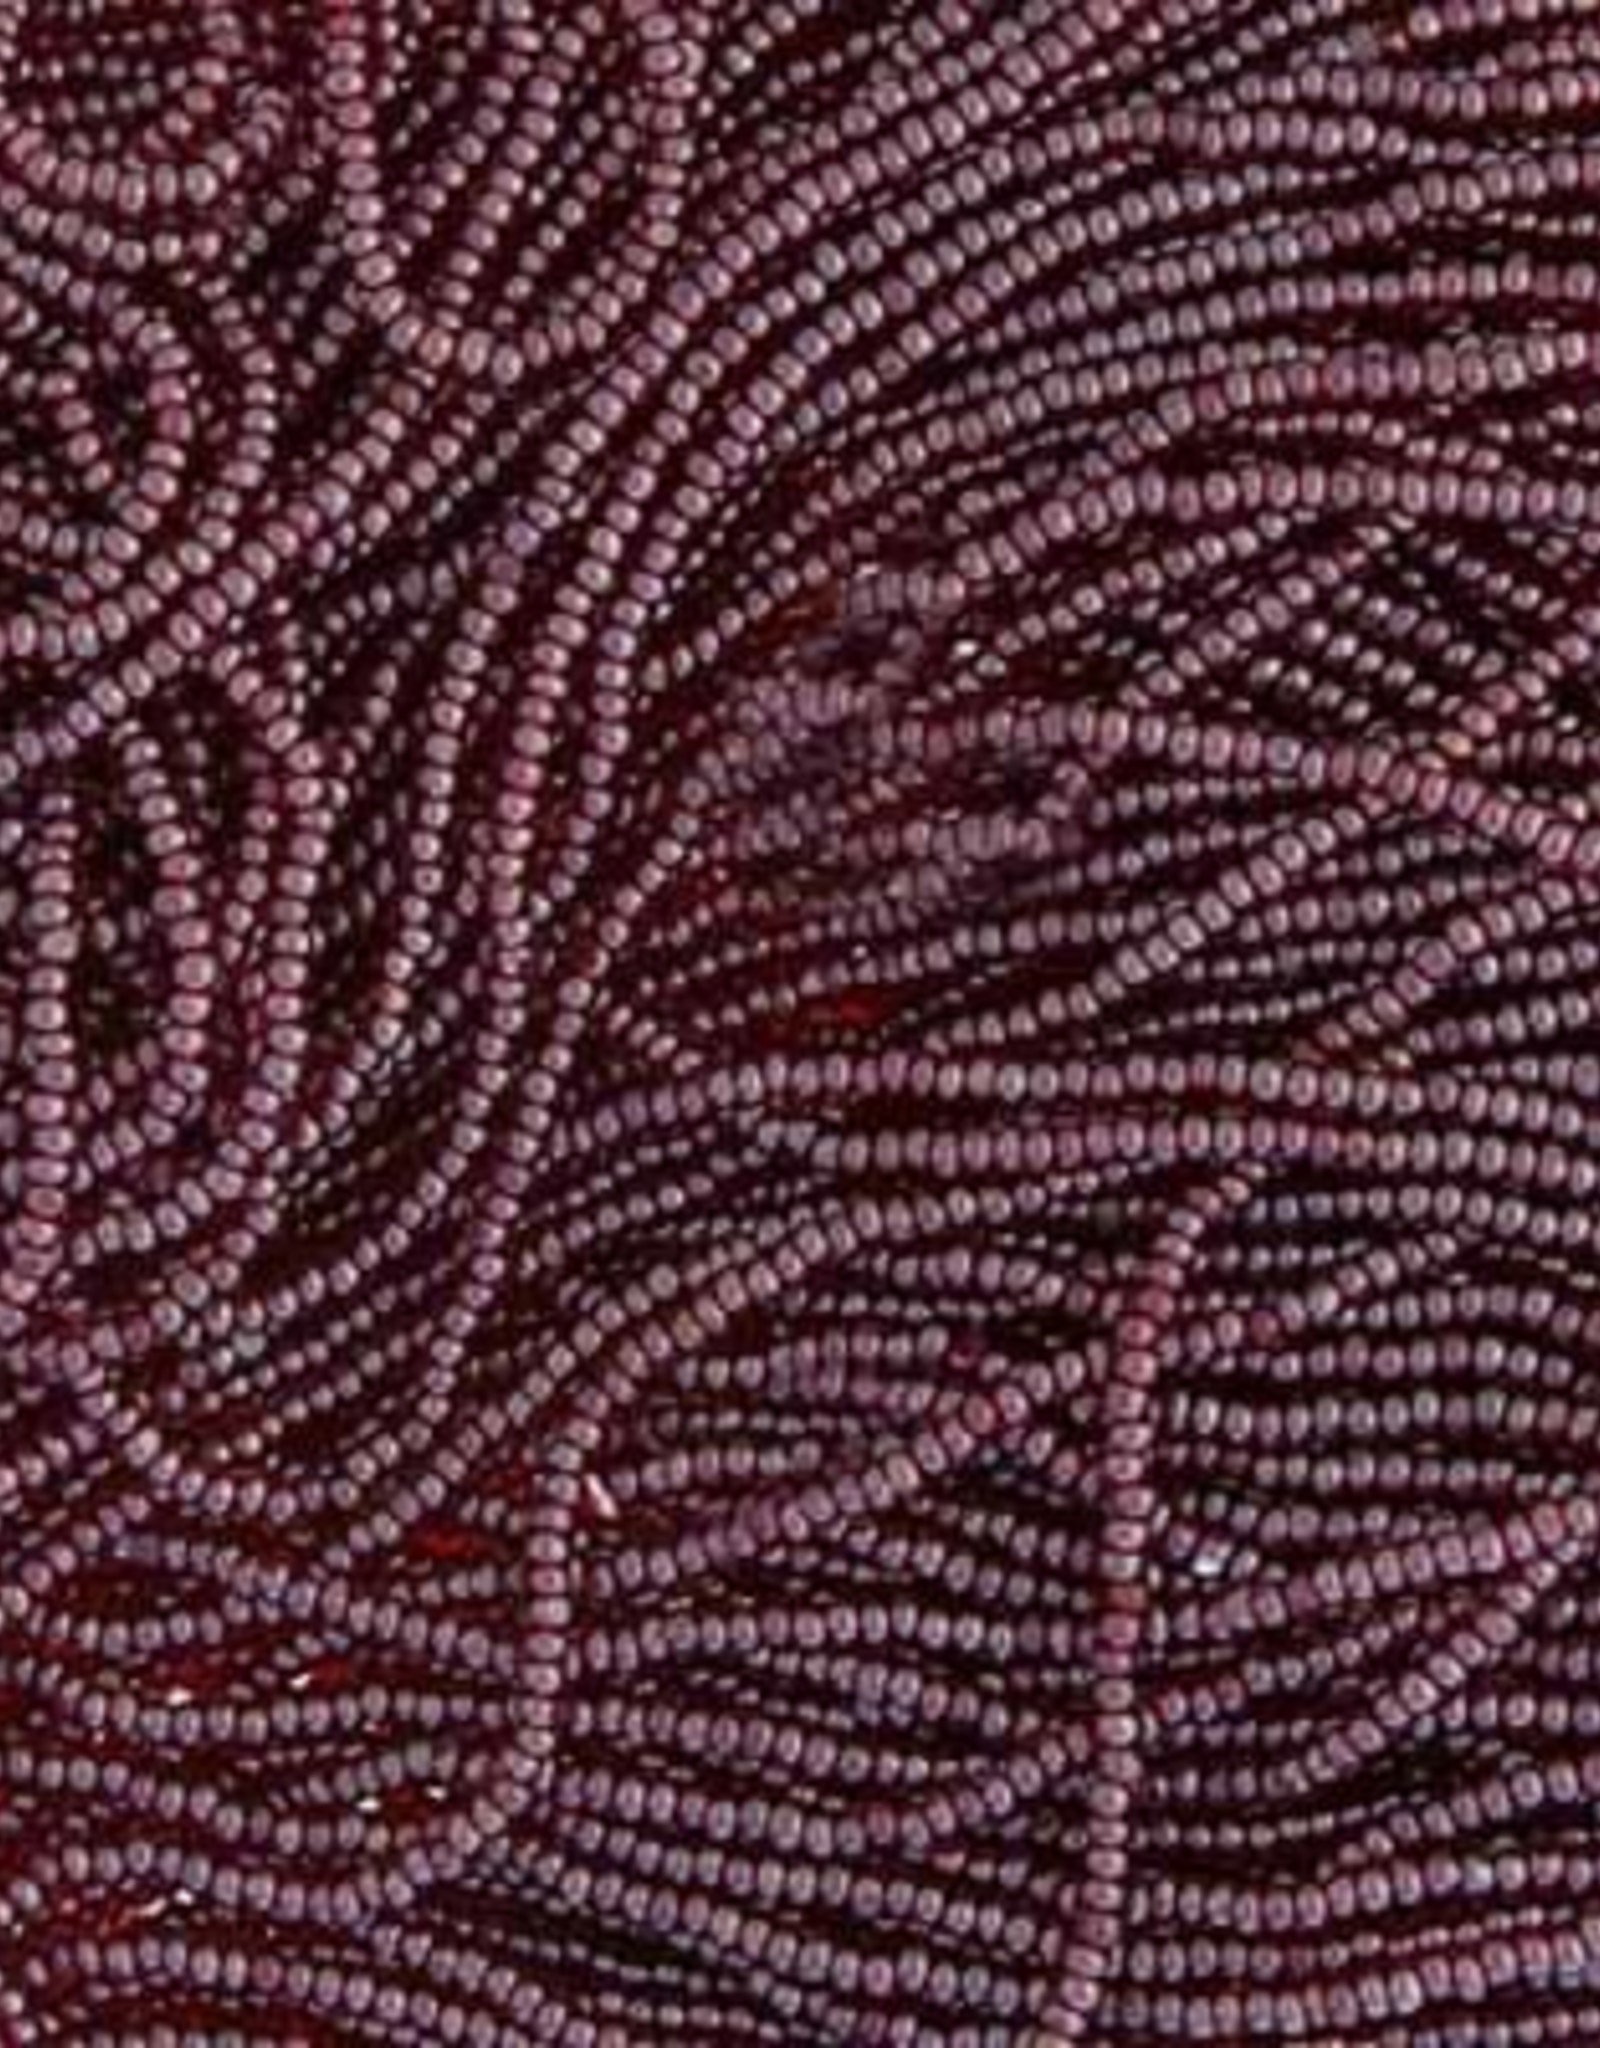 Preciosa Czech Seed Bead Cut Beads Transparent Garnet Lustered 13/0 1058